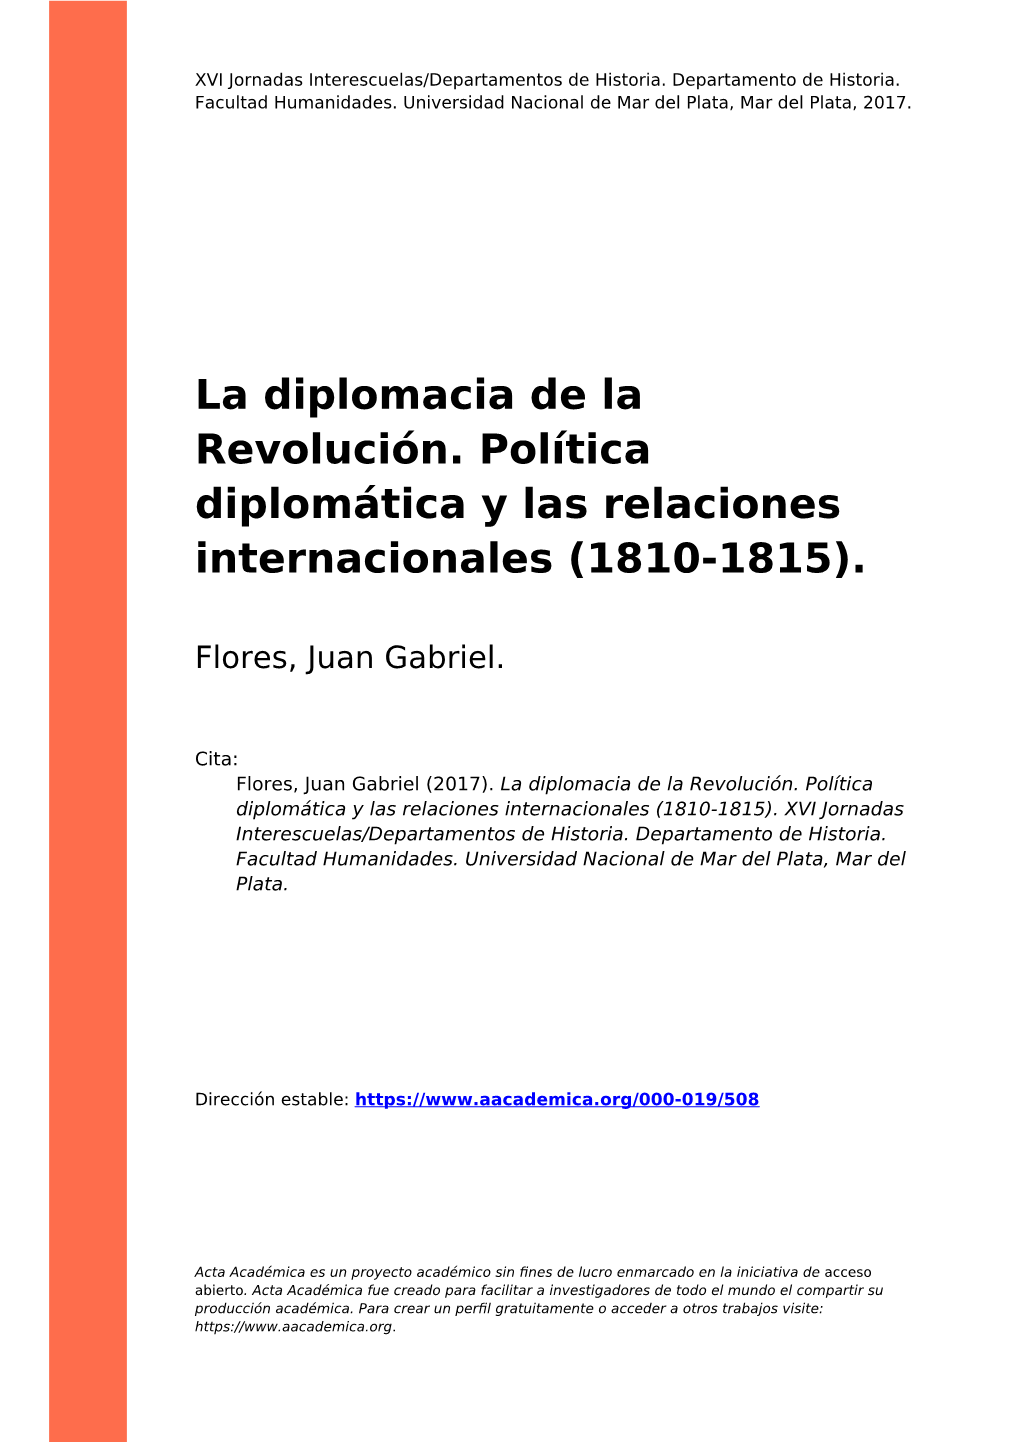 La Diplomacia De La Revolución. Política Diplomática Y Las Relaciones Internacionales (1810-1815)